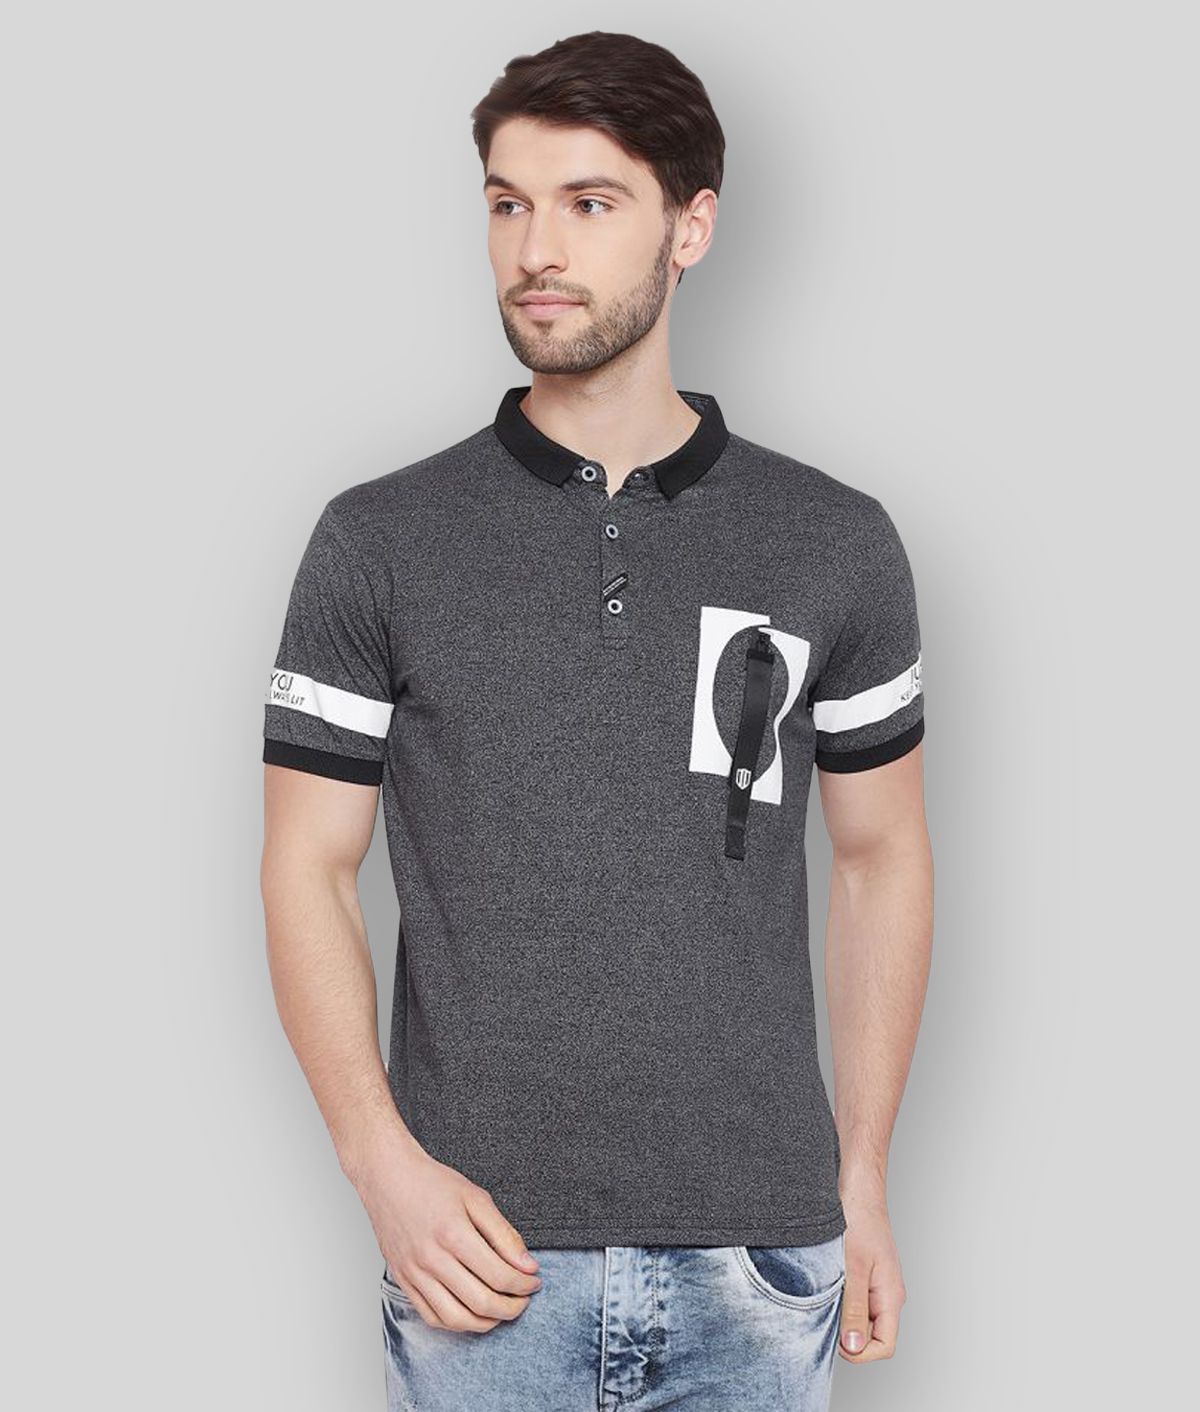     			Duke - Black Cotton Regular Fit Men's Polo T Shirt ( Pack of 1 )